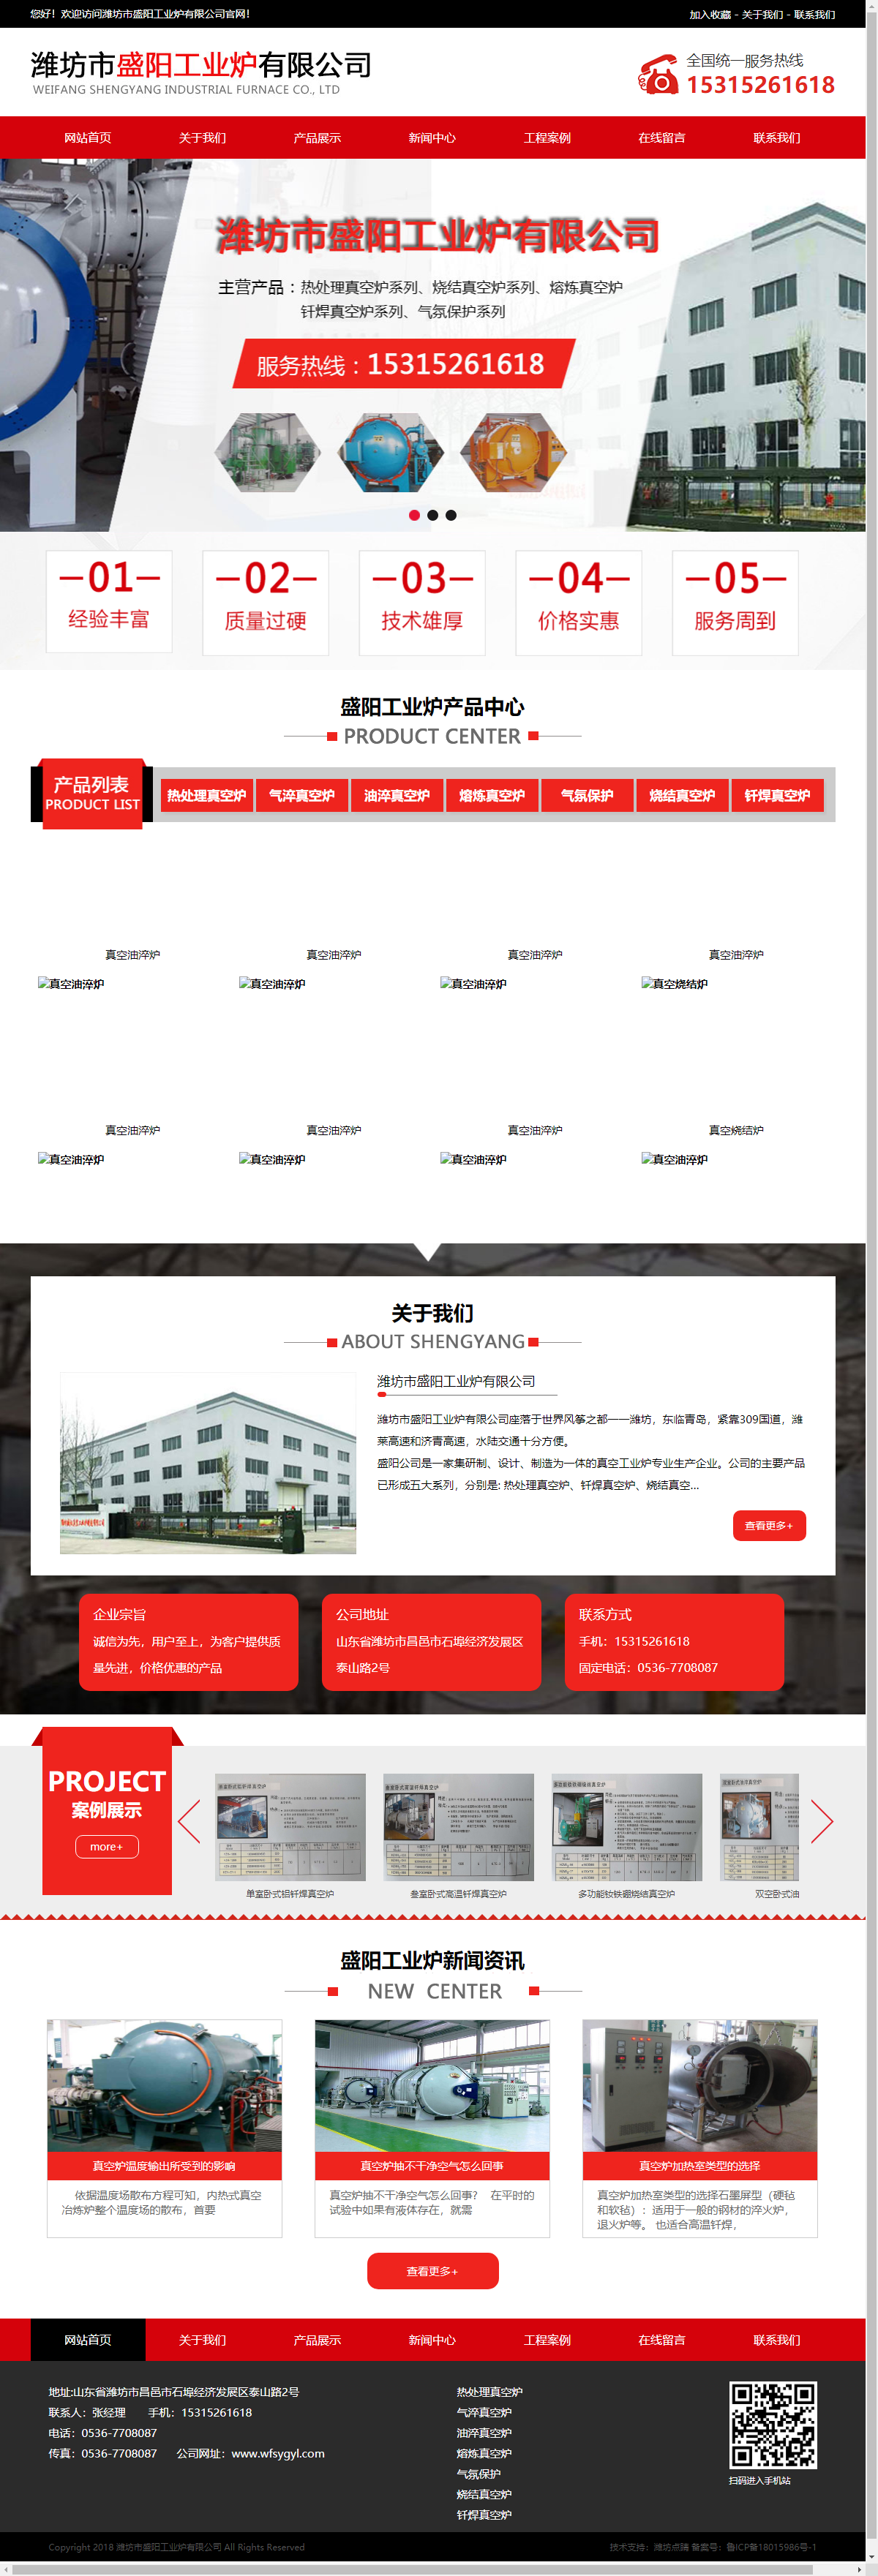 潍坊市盛阳工业炉有限公司网站案例